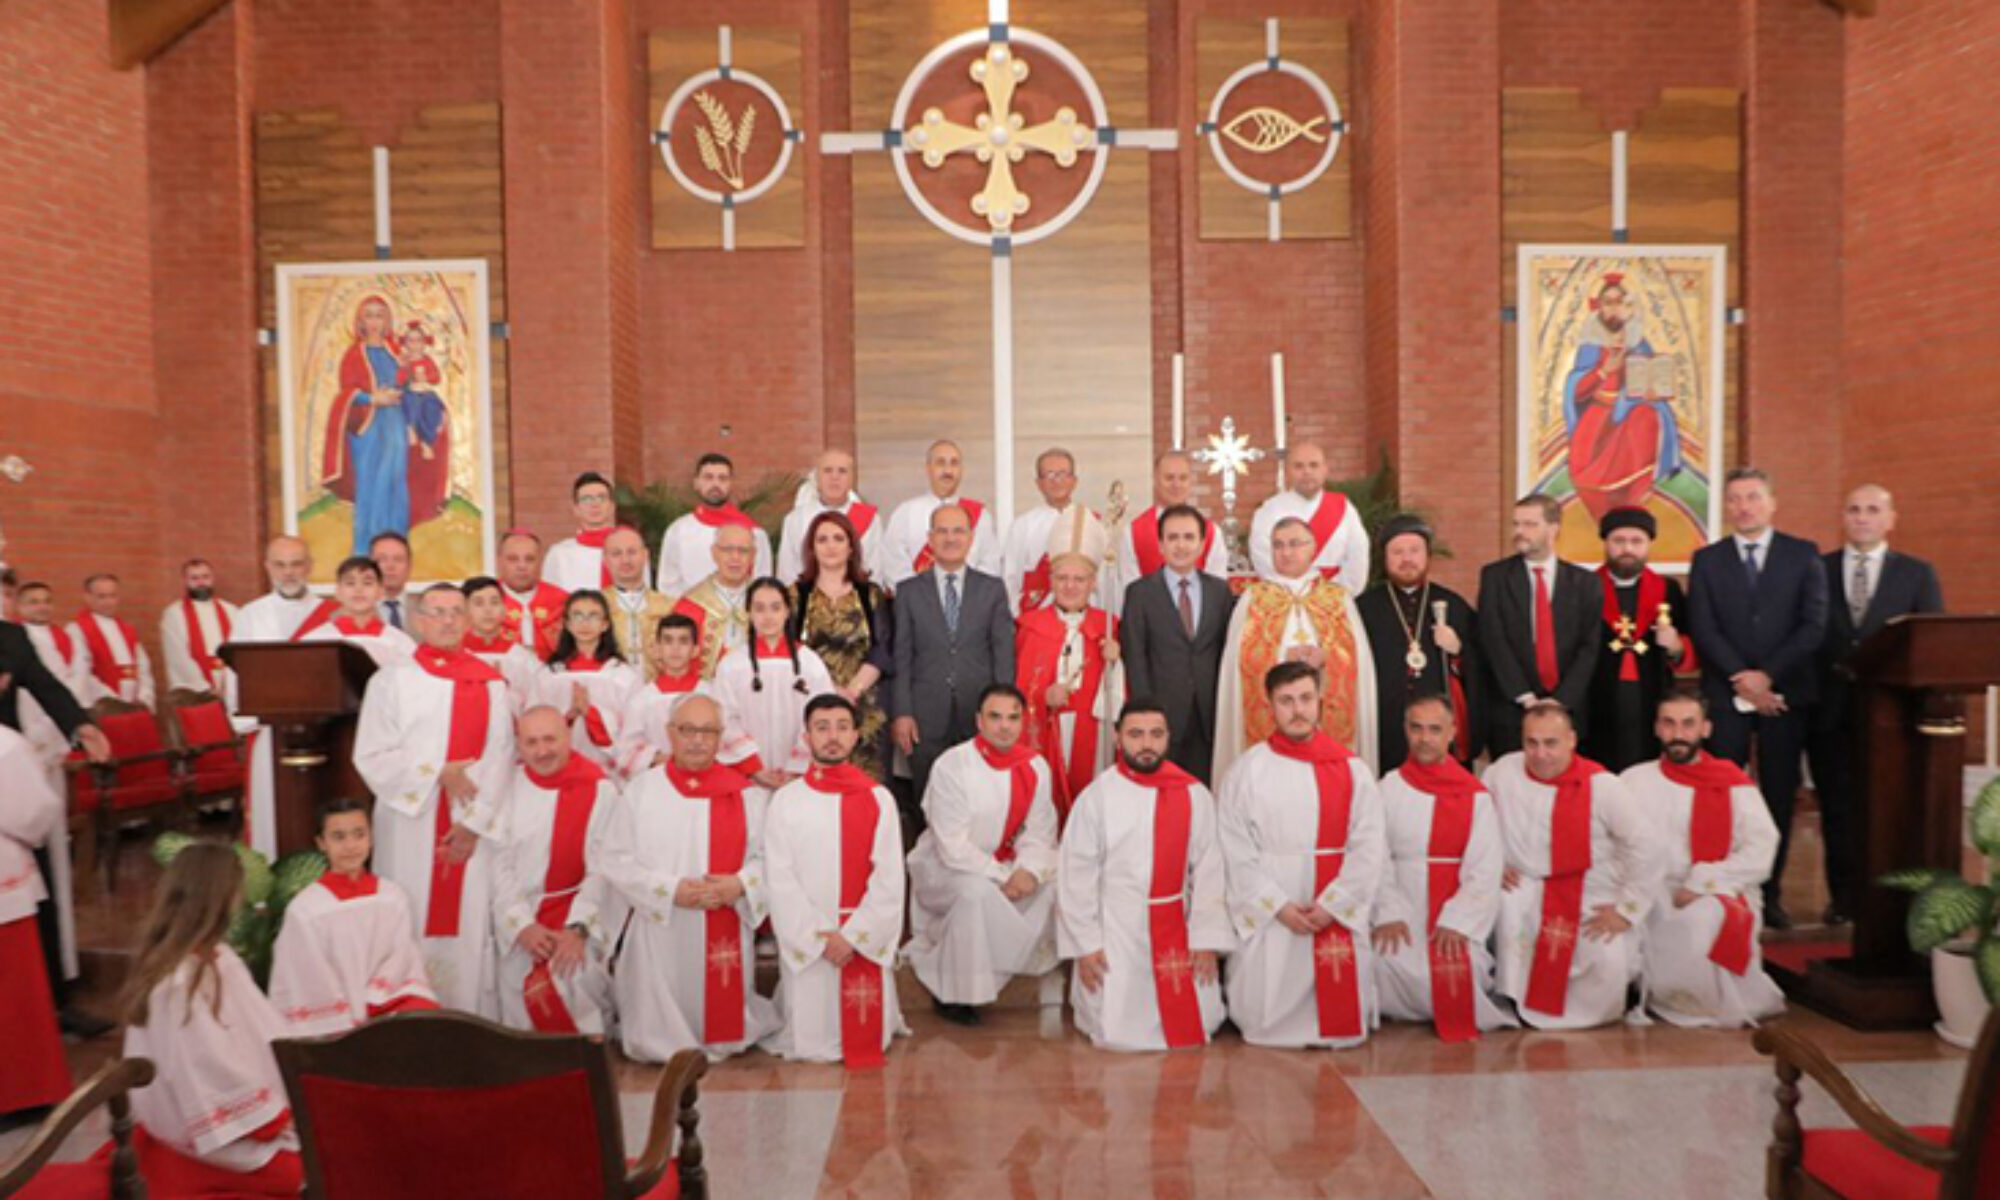 Yeni kilisenin açılışında konuşan Kardinal Sarko: “Kürdistan Bölgesi’ndeki birlikteliği tanımlamaya kelimeler yetmez"